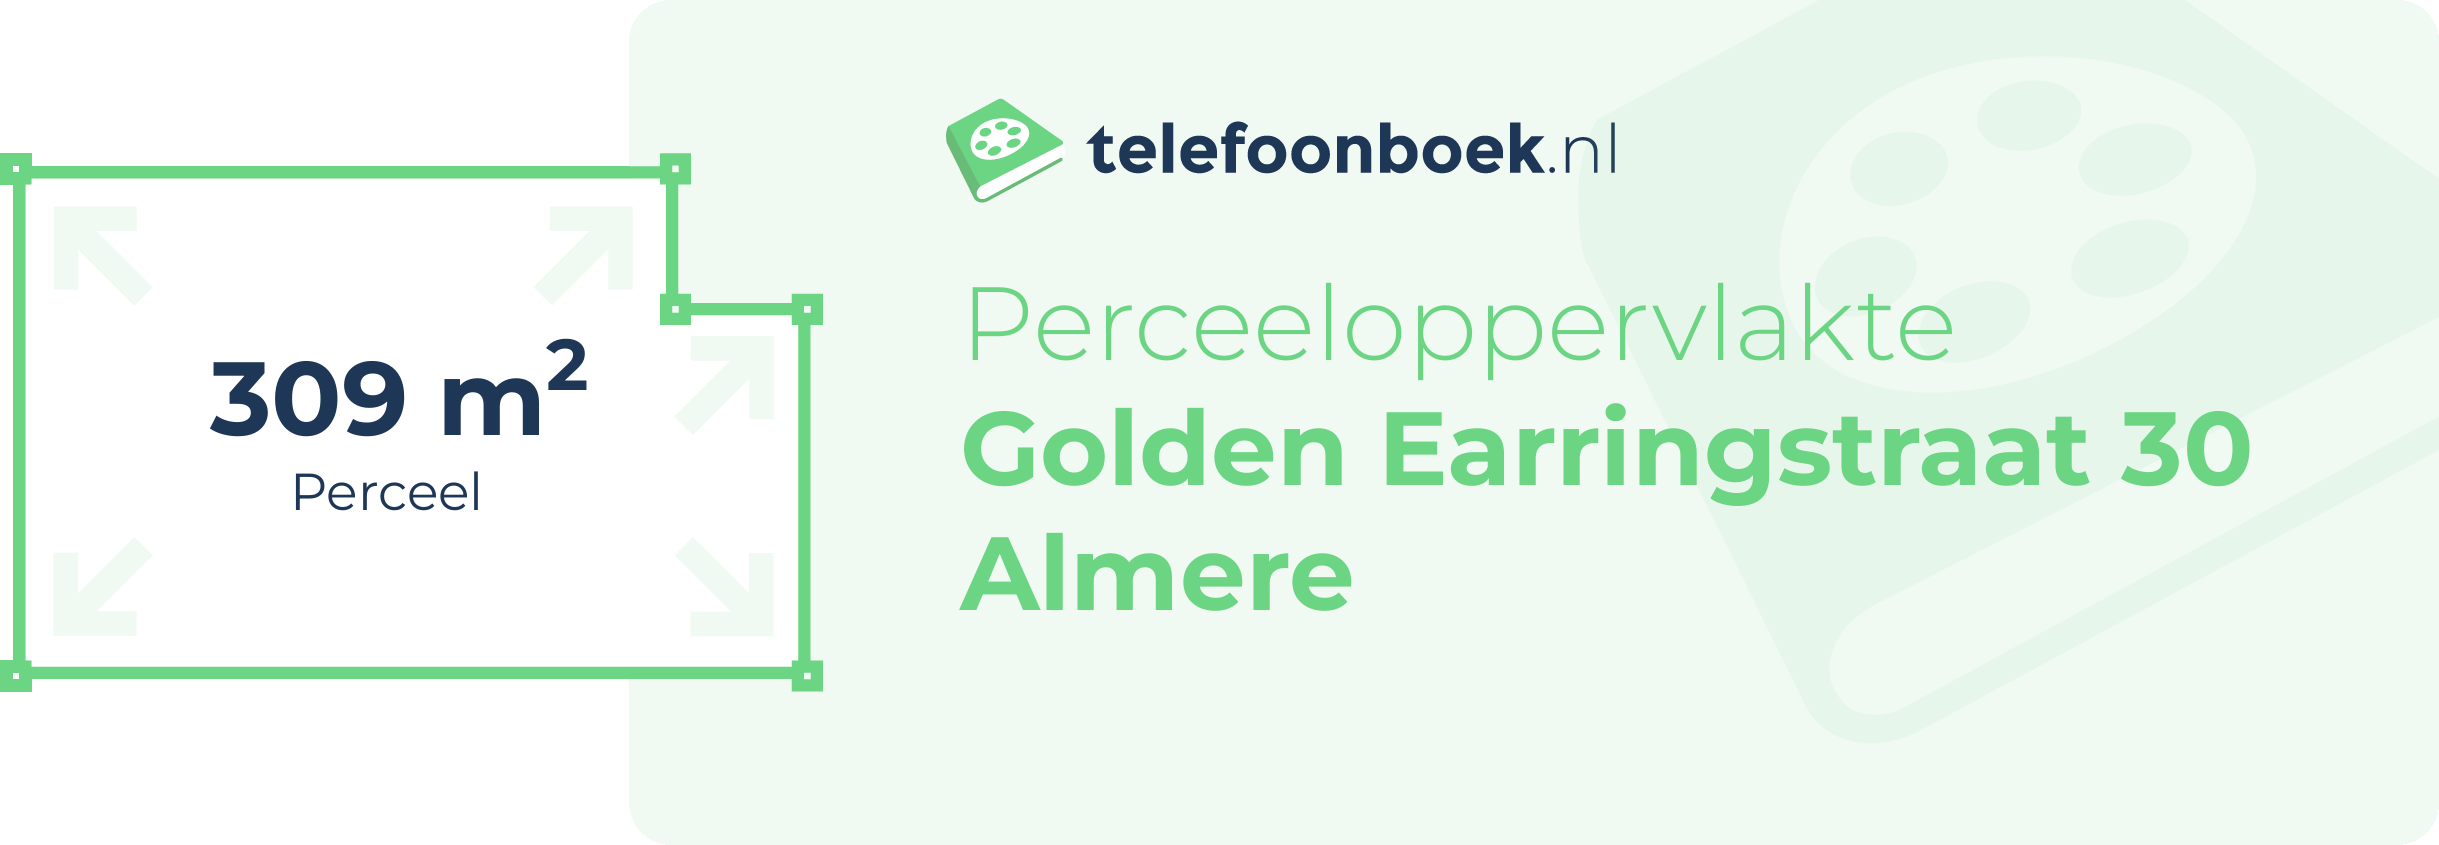 Perceeloppervlakte Golden Earringstraat 30 Almere